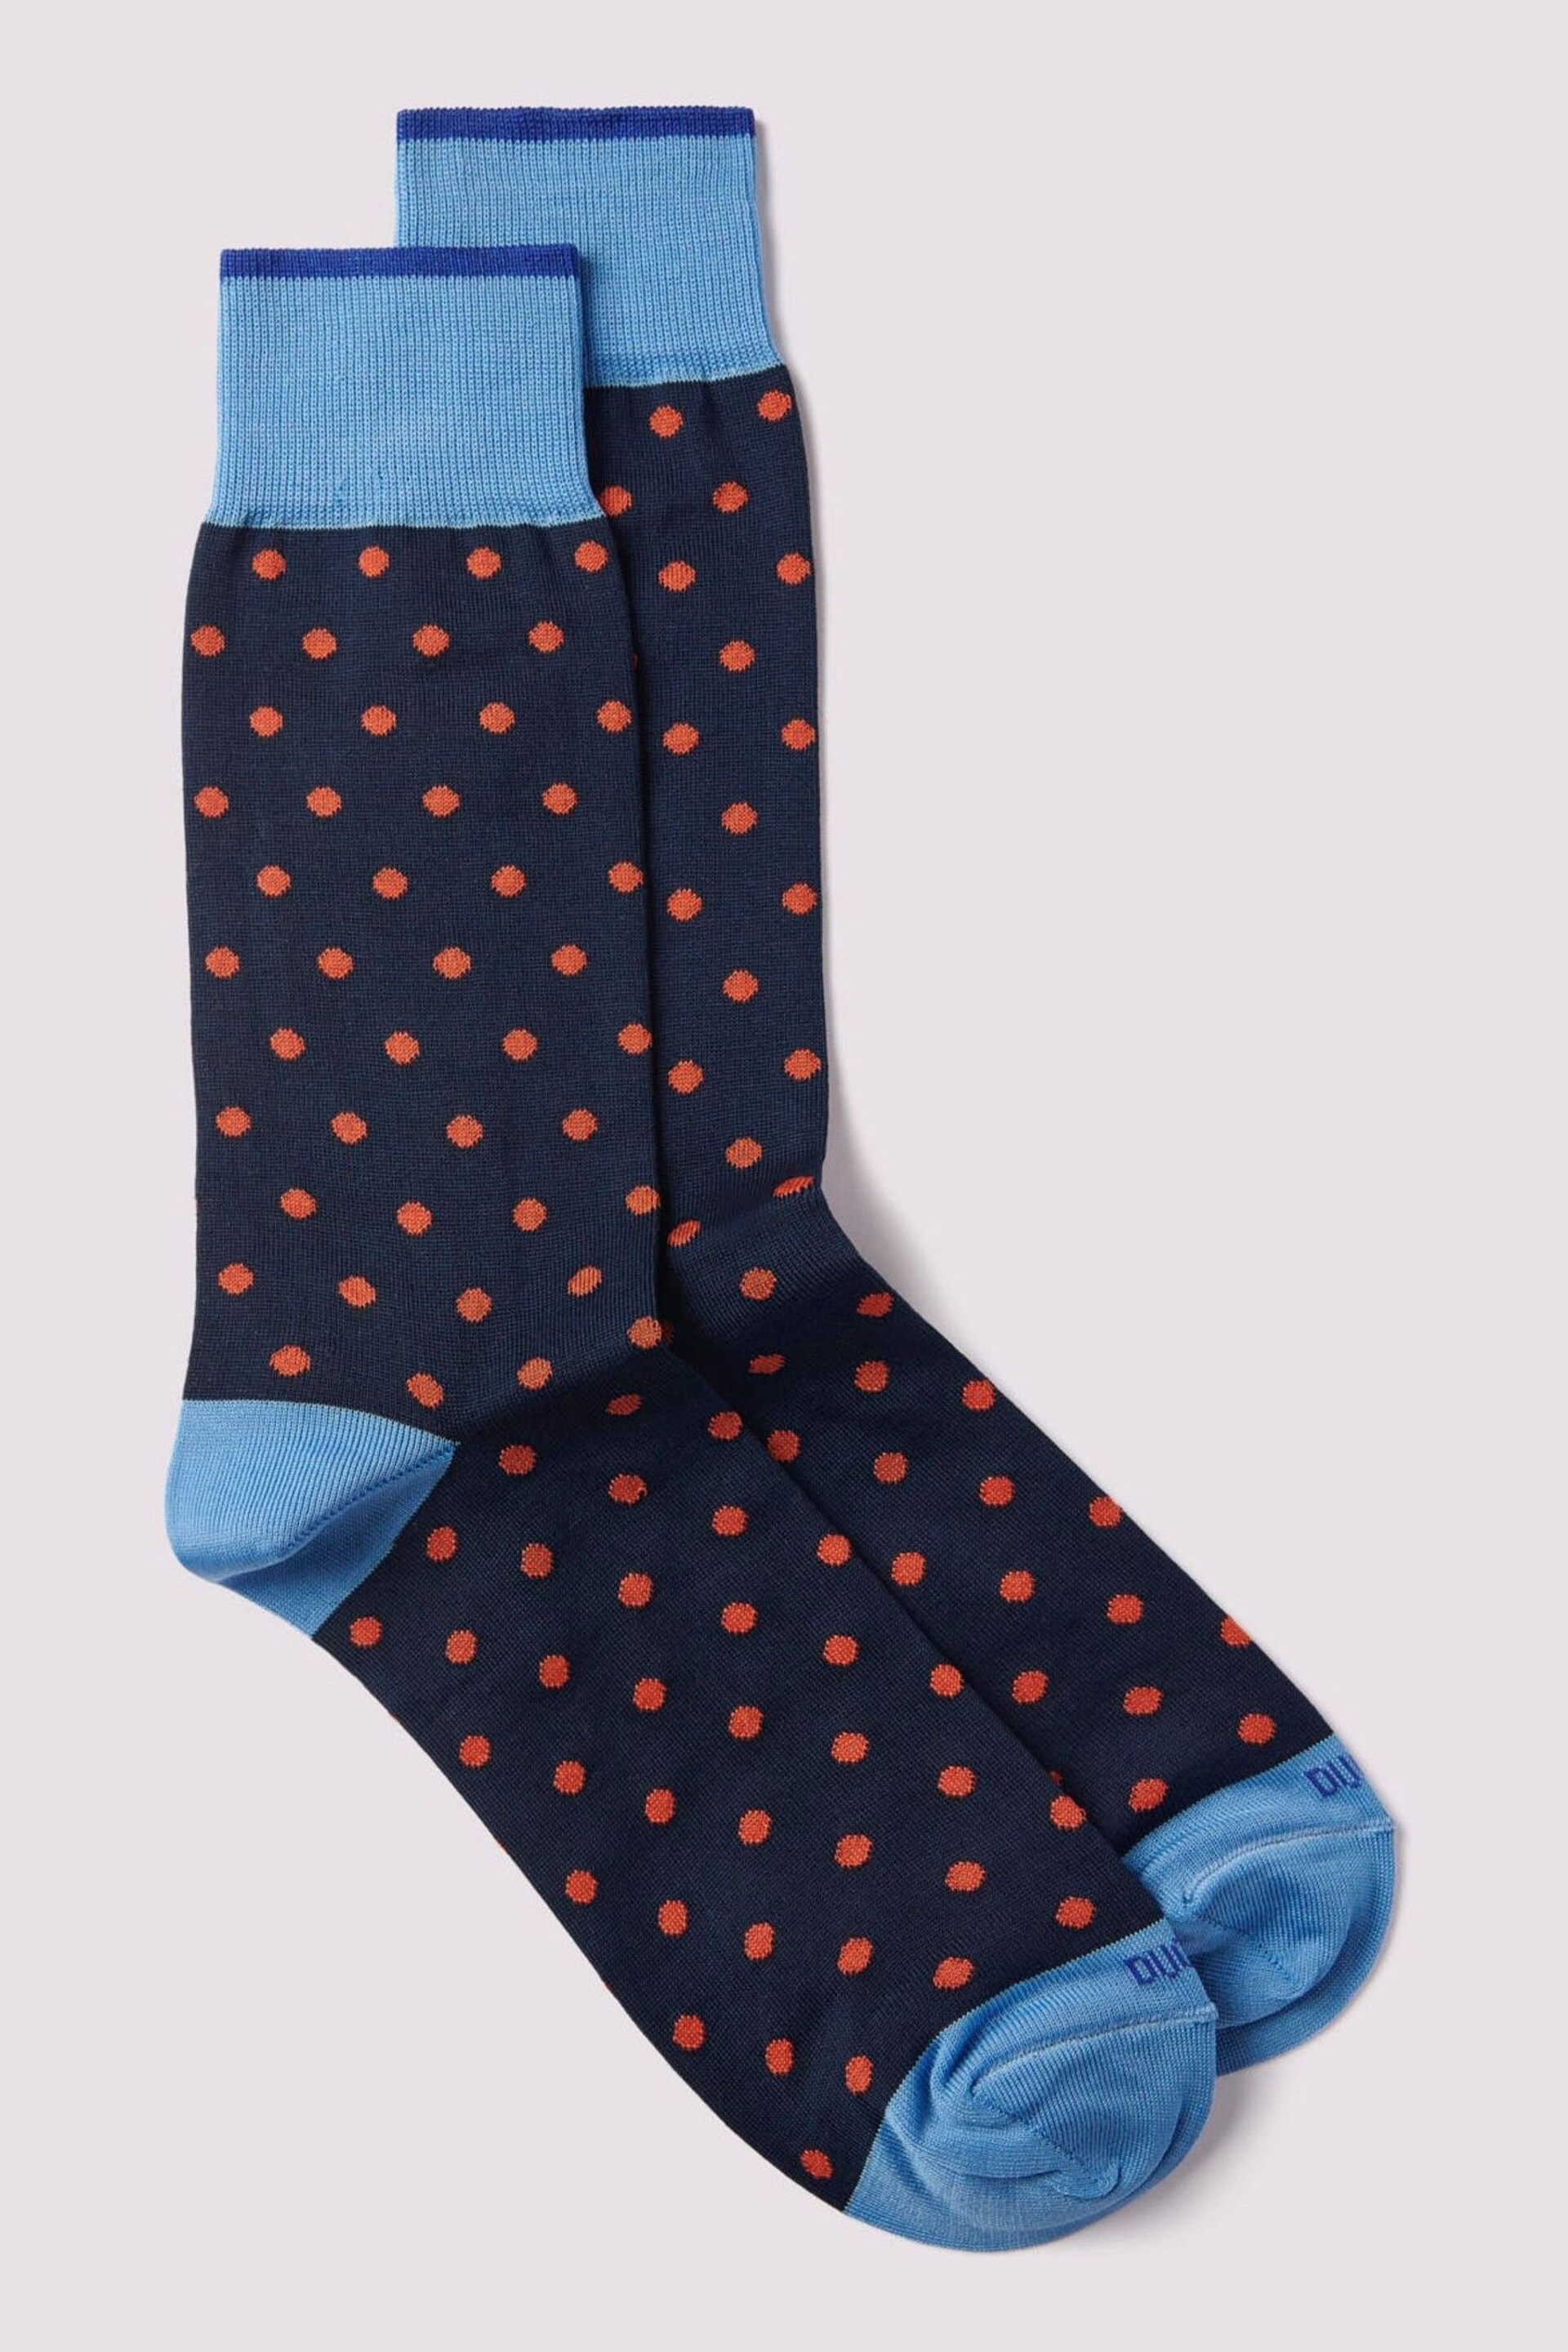 Duchamp Spot Black Socks - Image 2 of 3